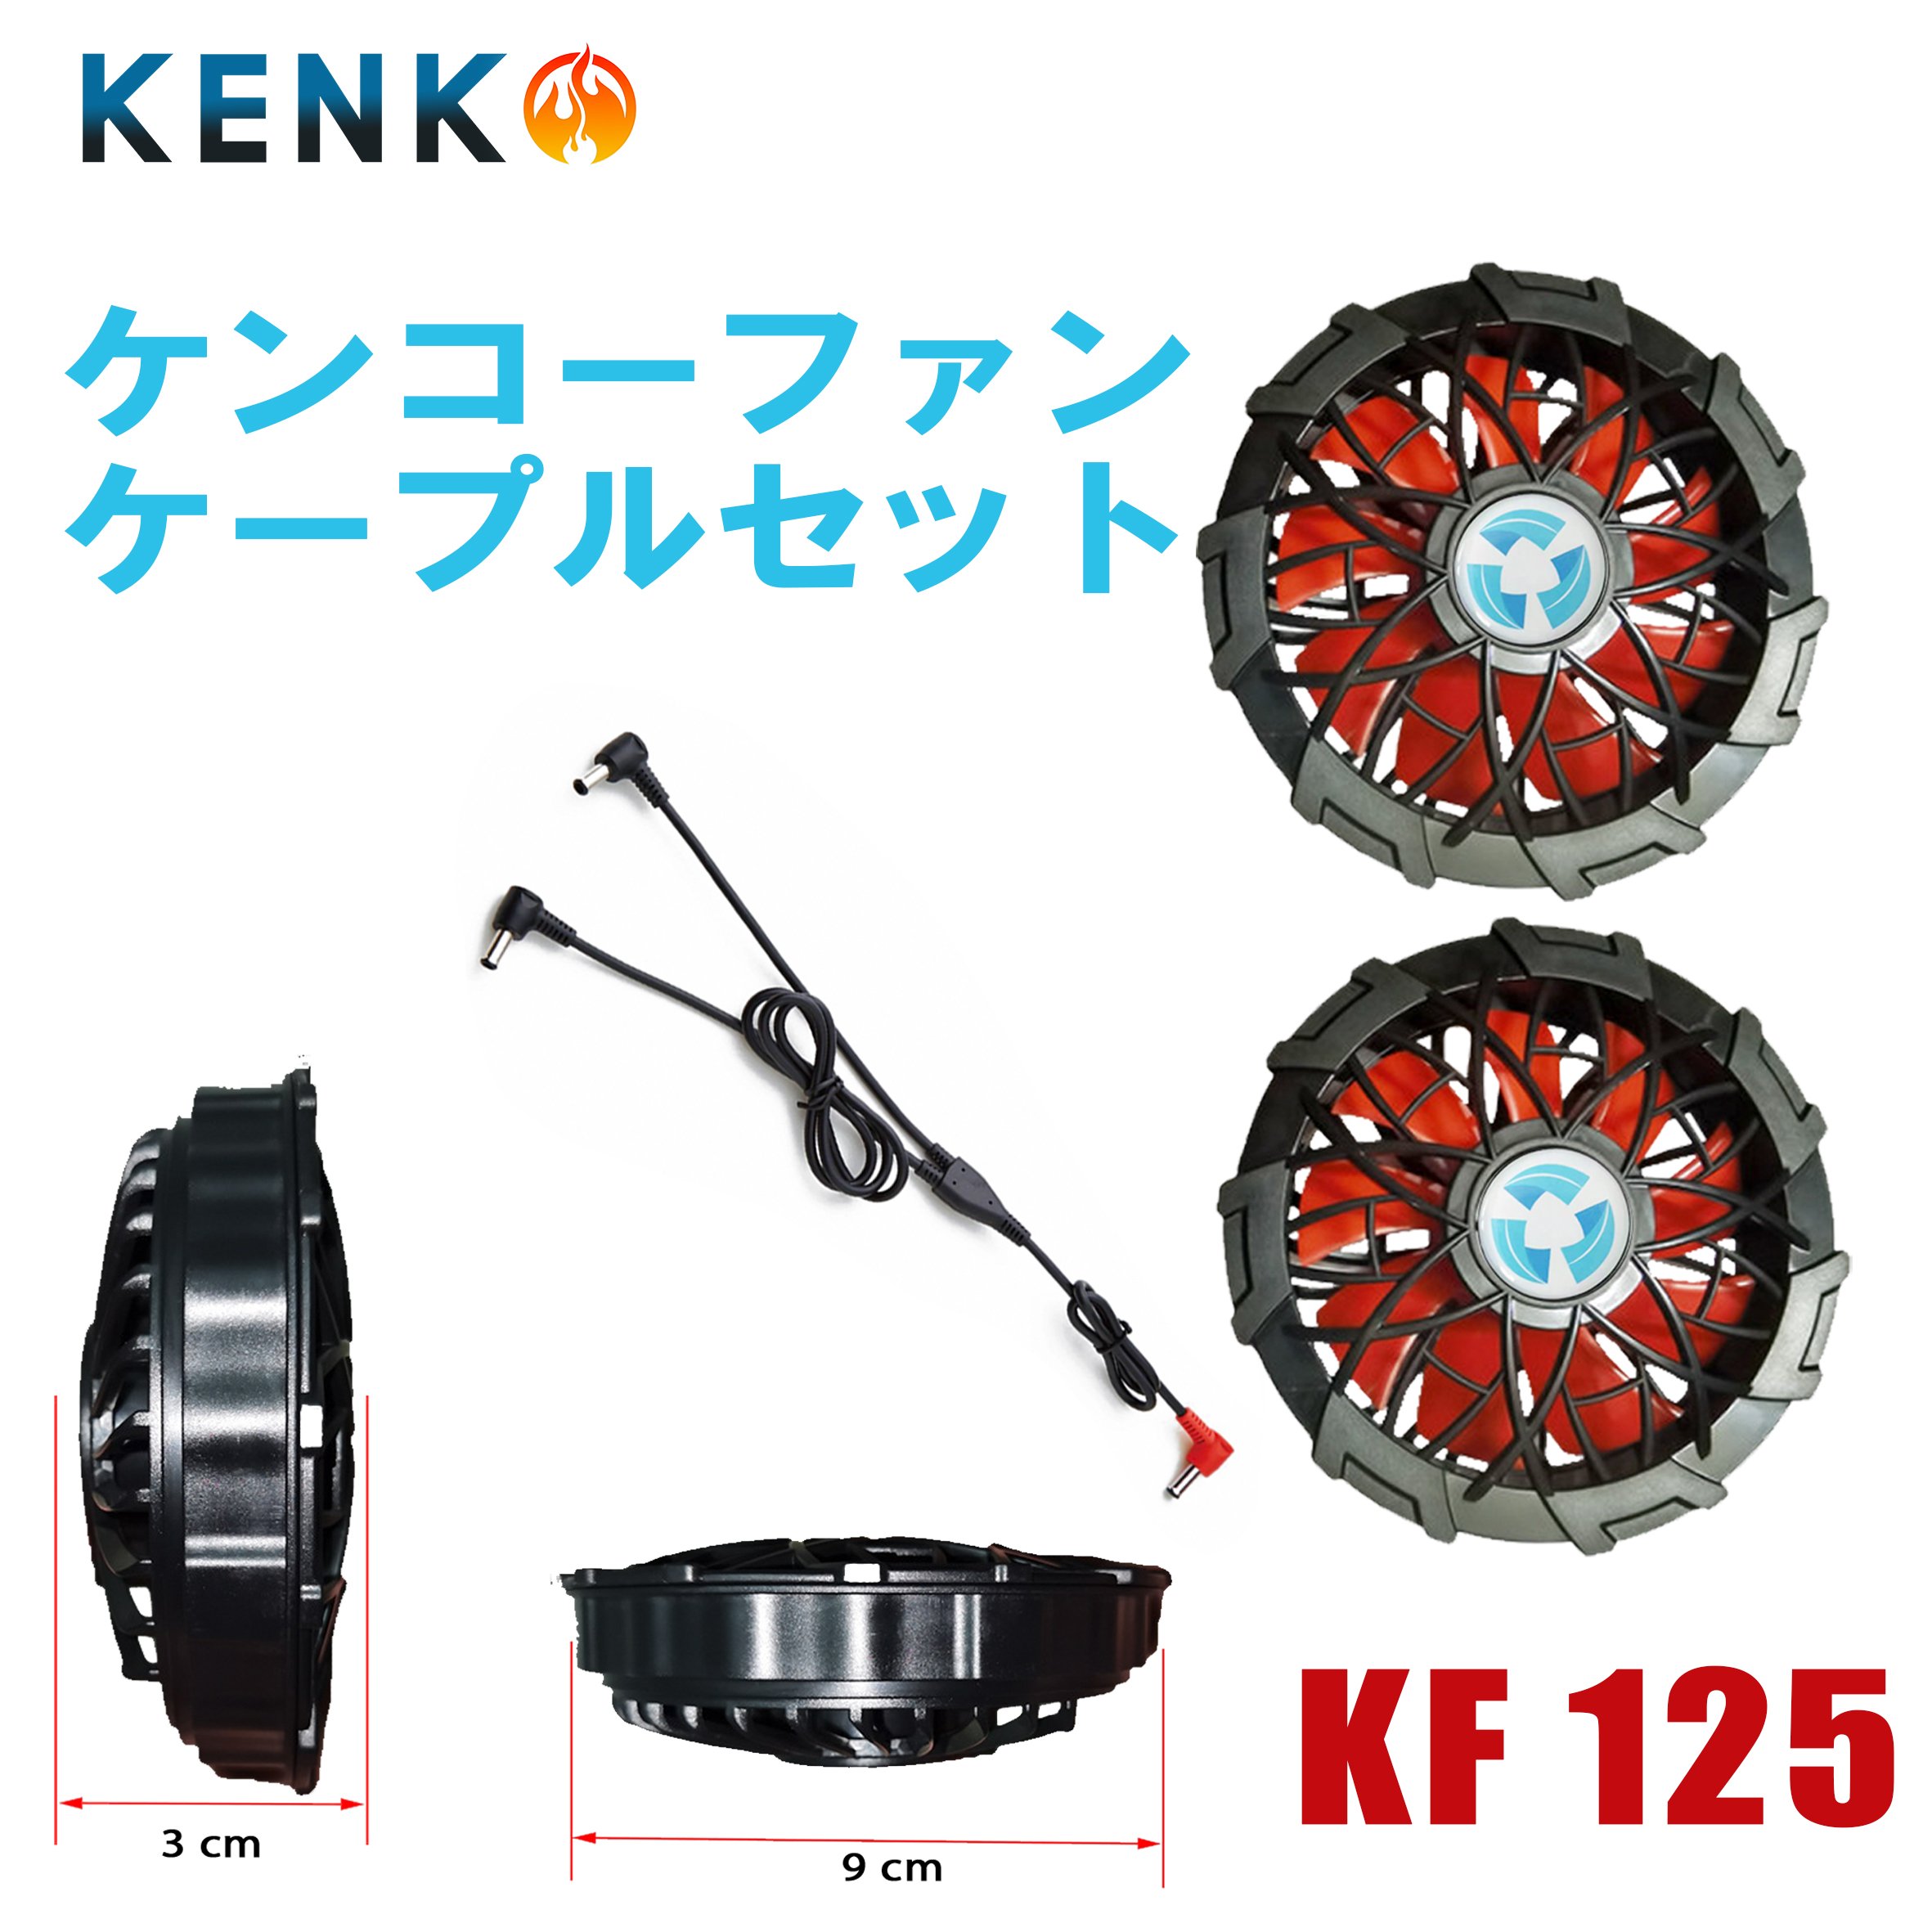 ケンコー KF125 専用ファンユニット限定カラー